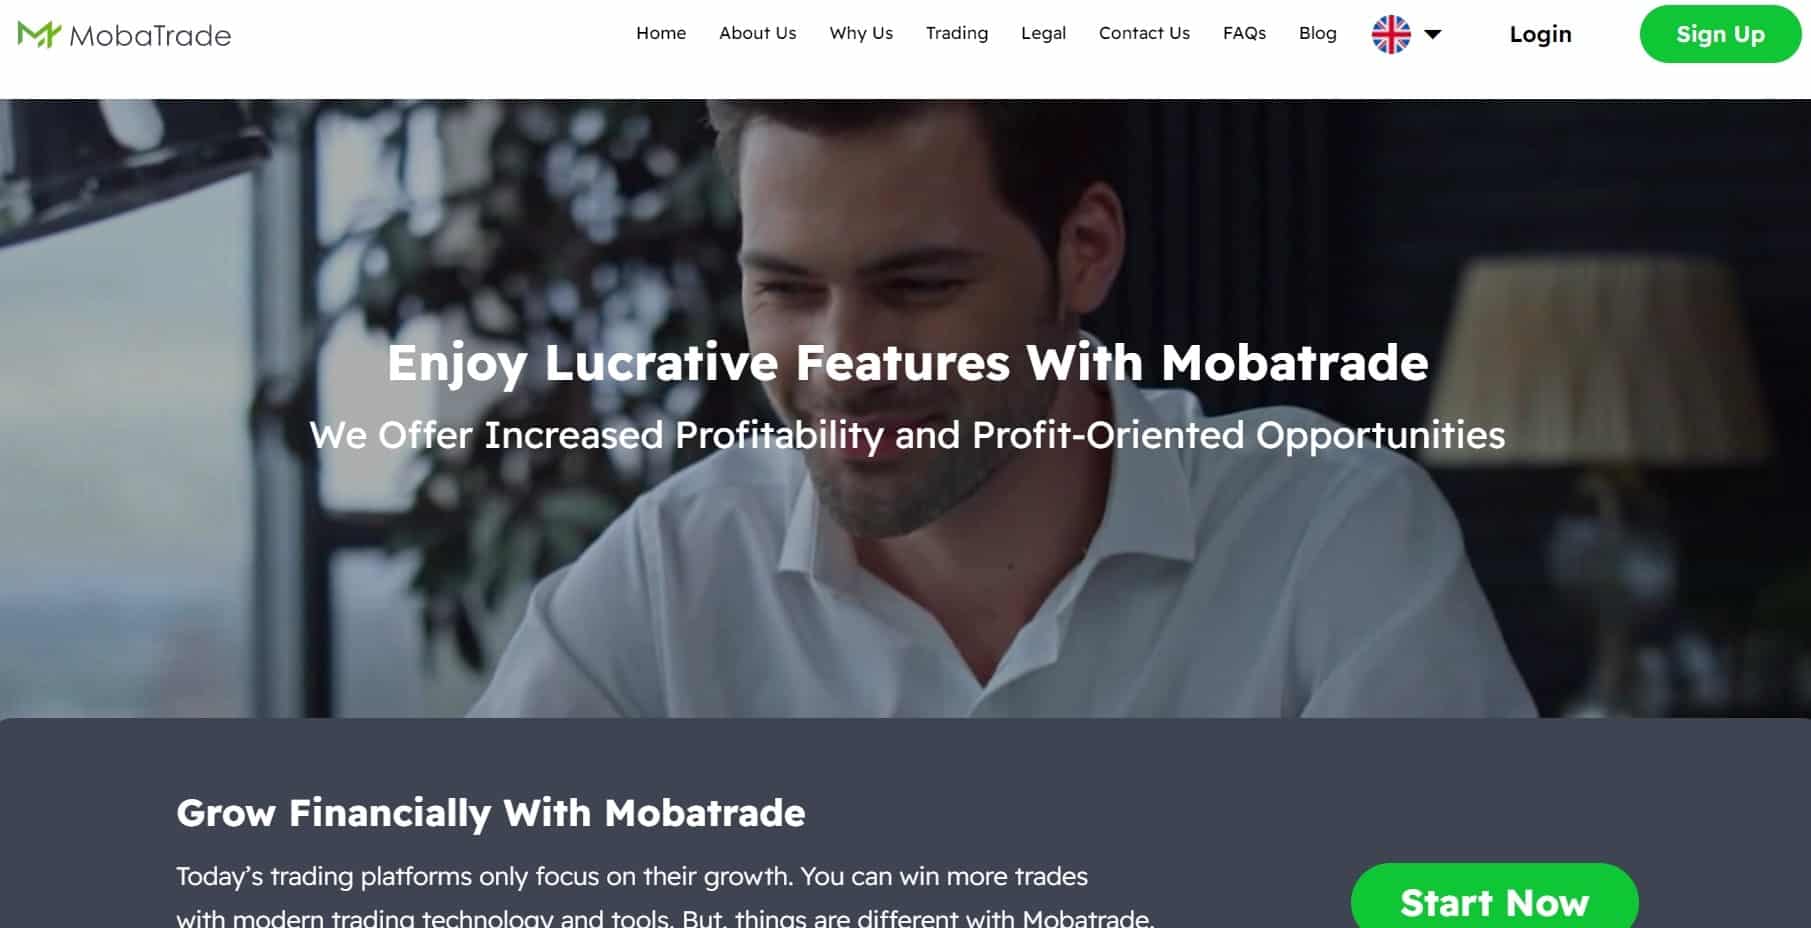 Mobatrade homepage